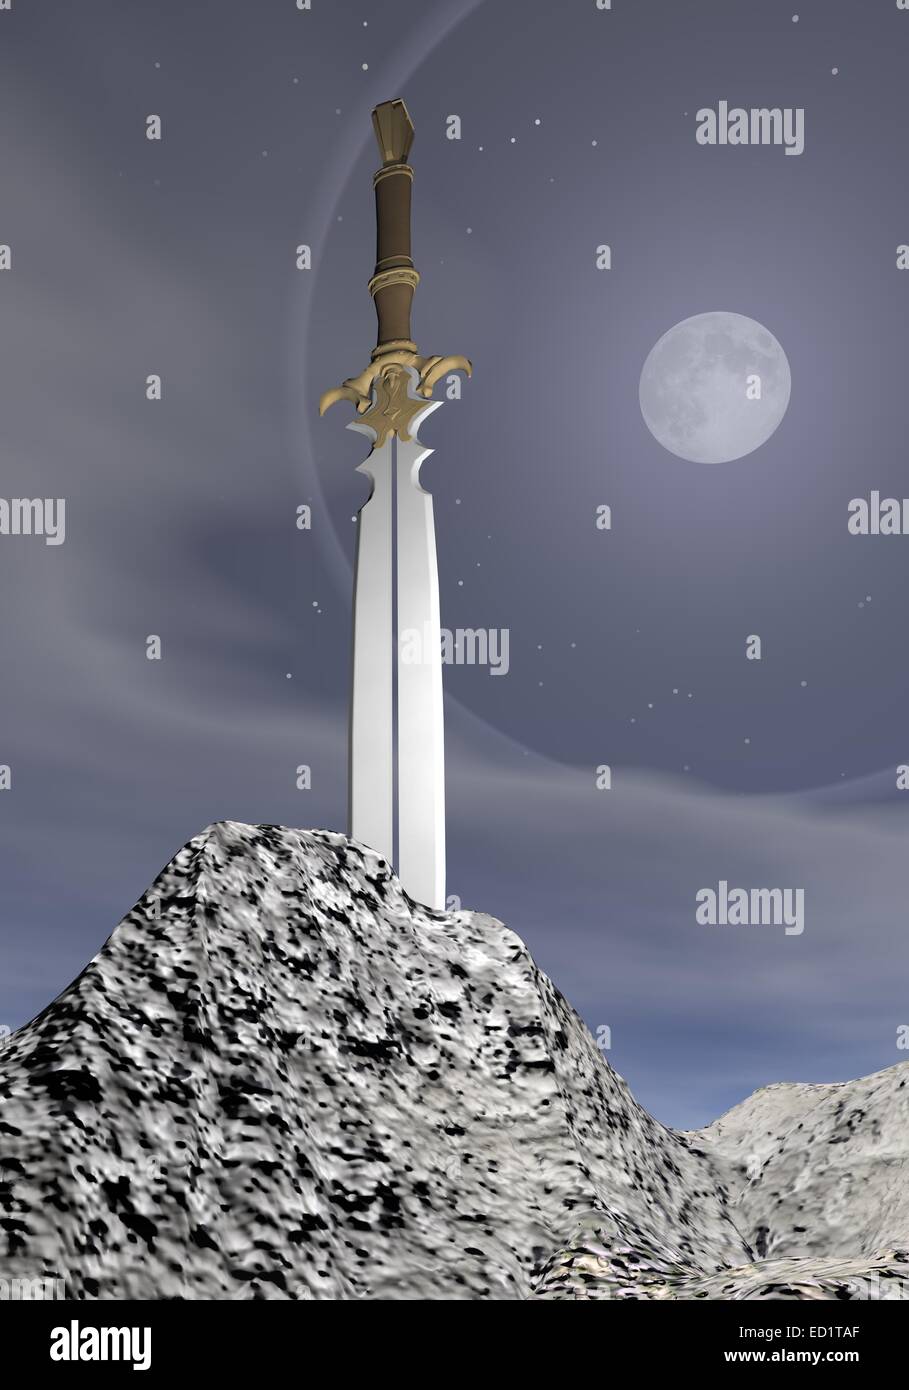 Épée magique coincé dans la roche par nuit de pleine lune avec gris Banque D'Images